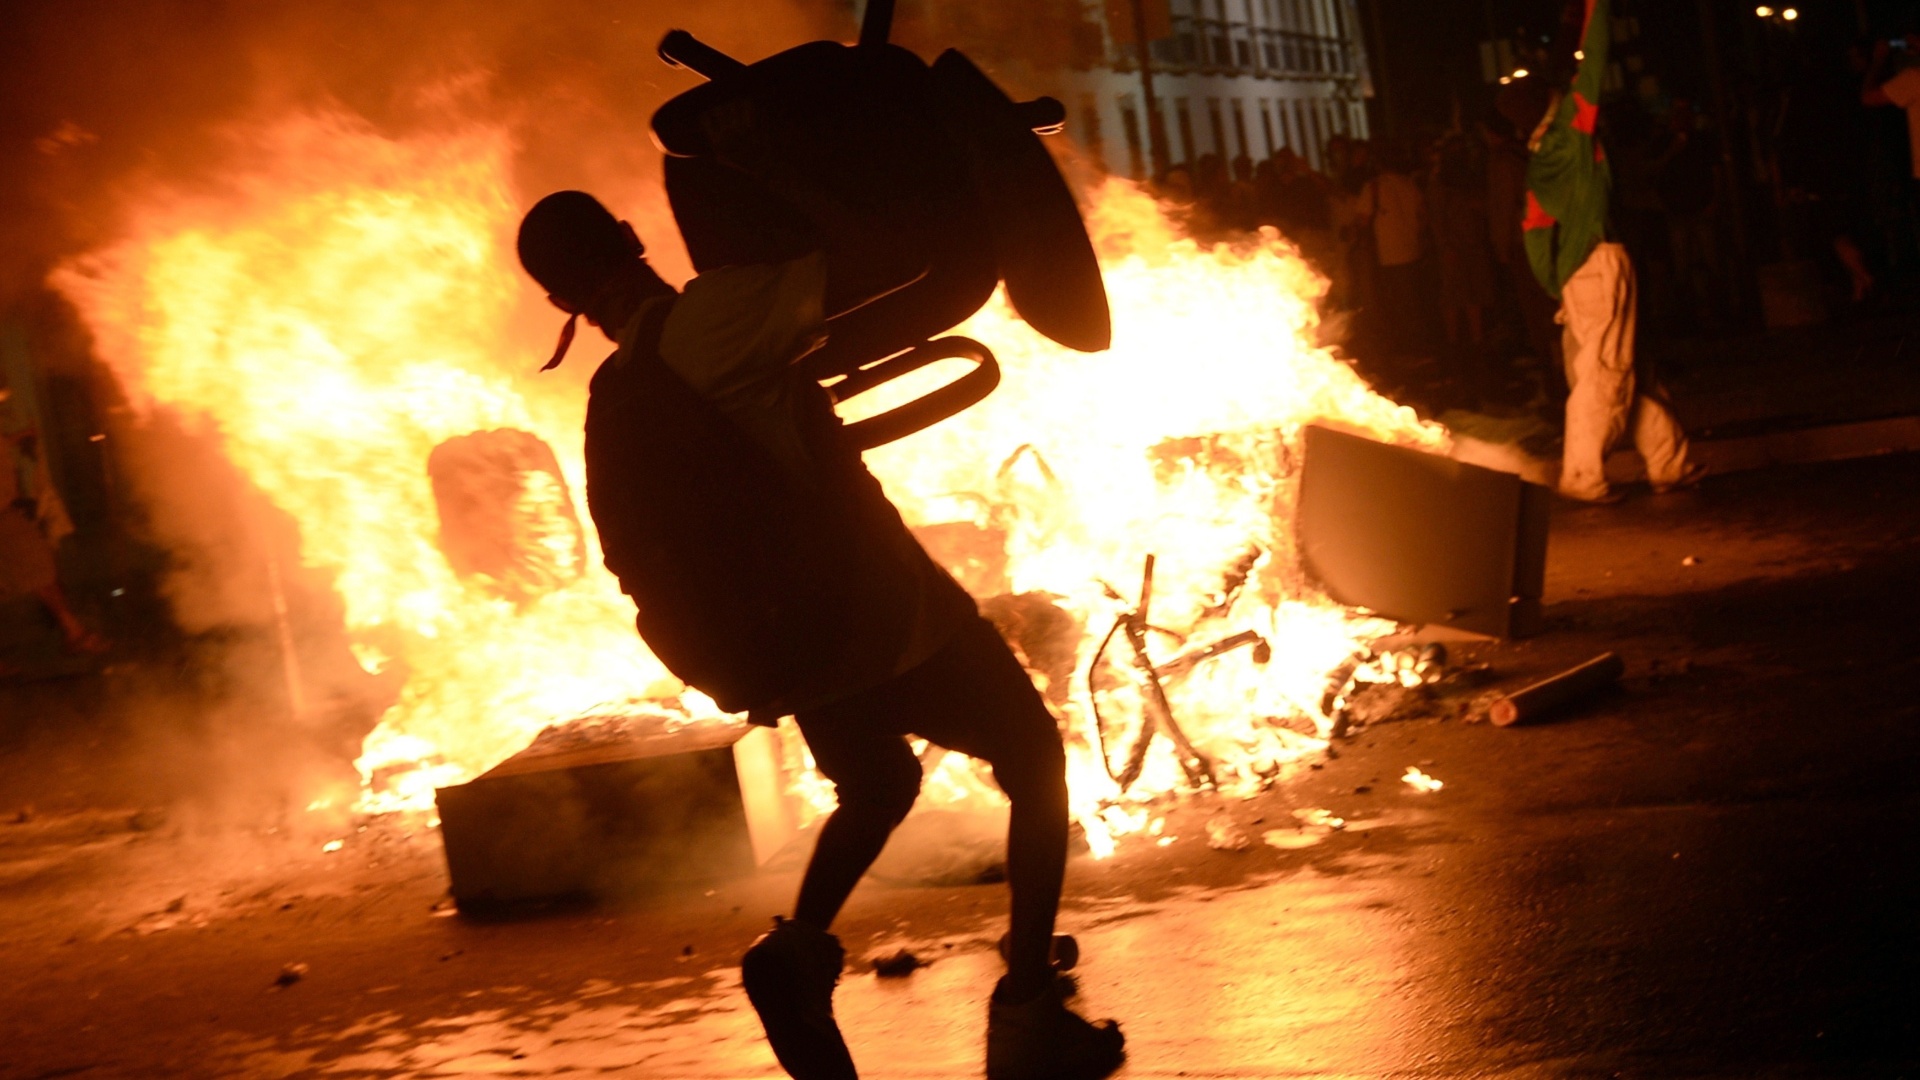 manifestante-atira-cadeira-em-fogueira-feita-em-rua-durante-protestos-no-centro-do-rio-de-janeiro-1371523010421_1920x1080